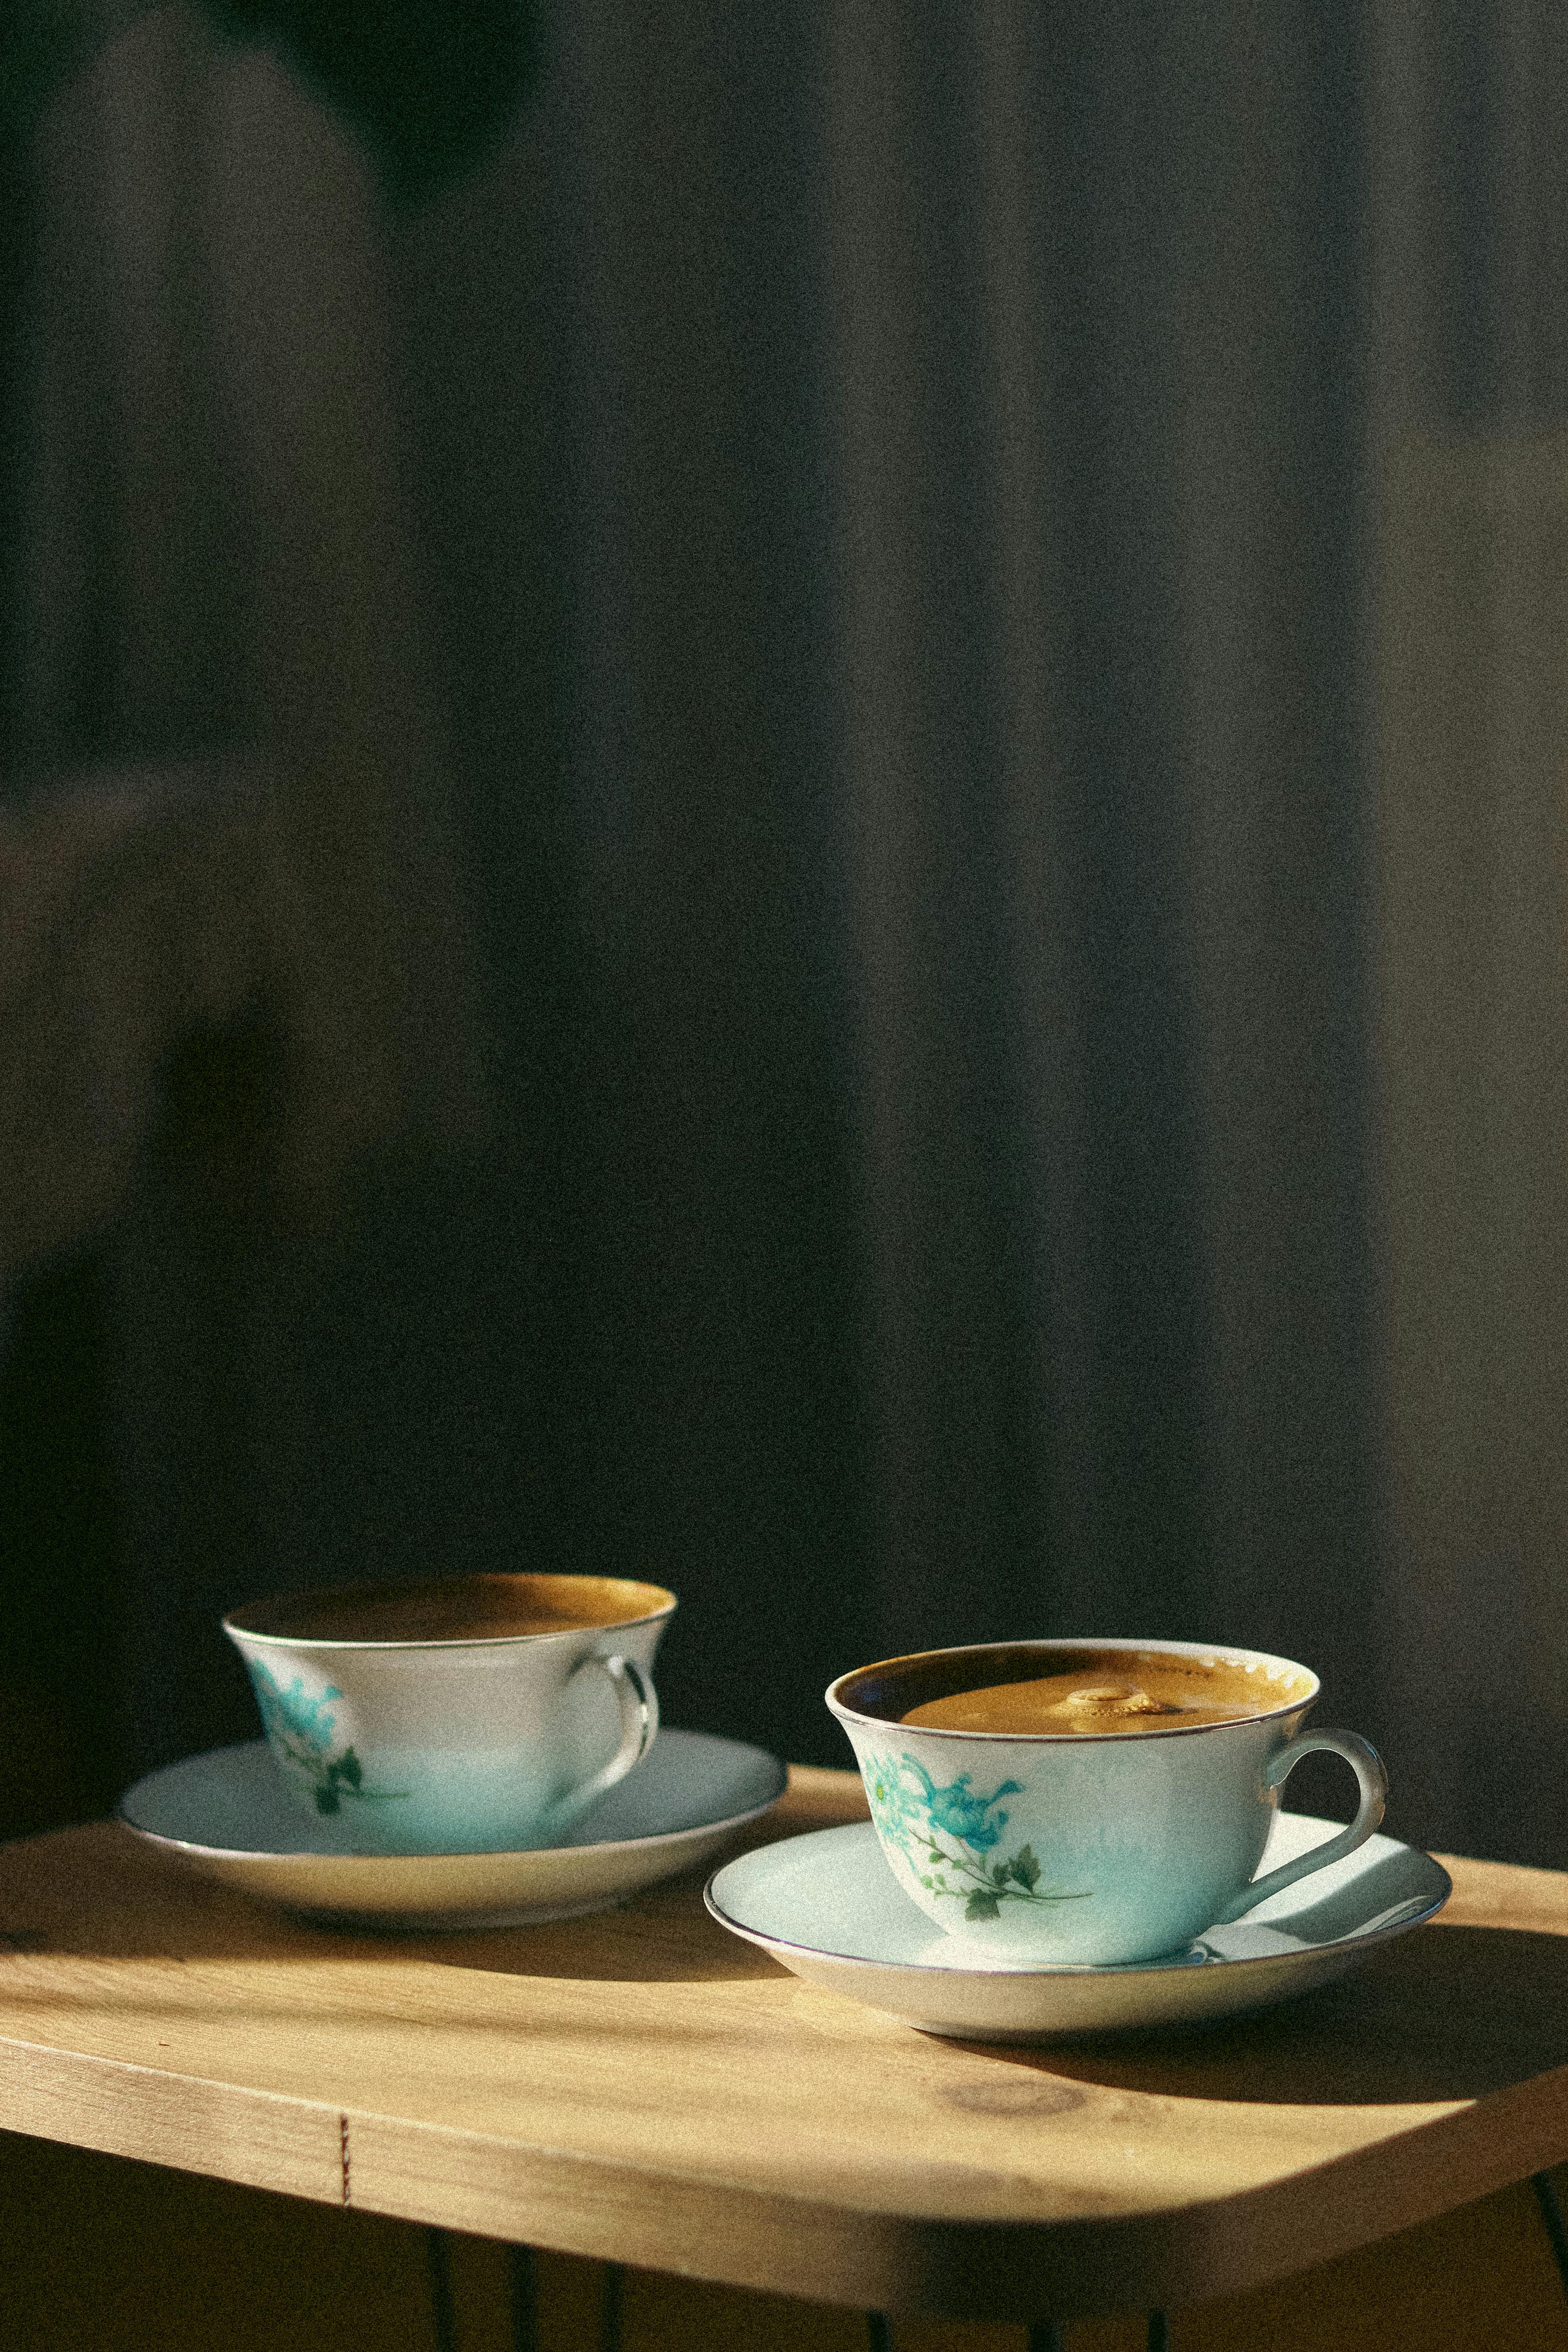 Dos tazas de café | Fuente: Pexels